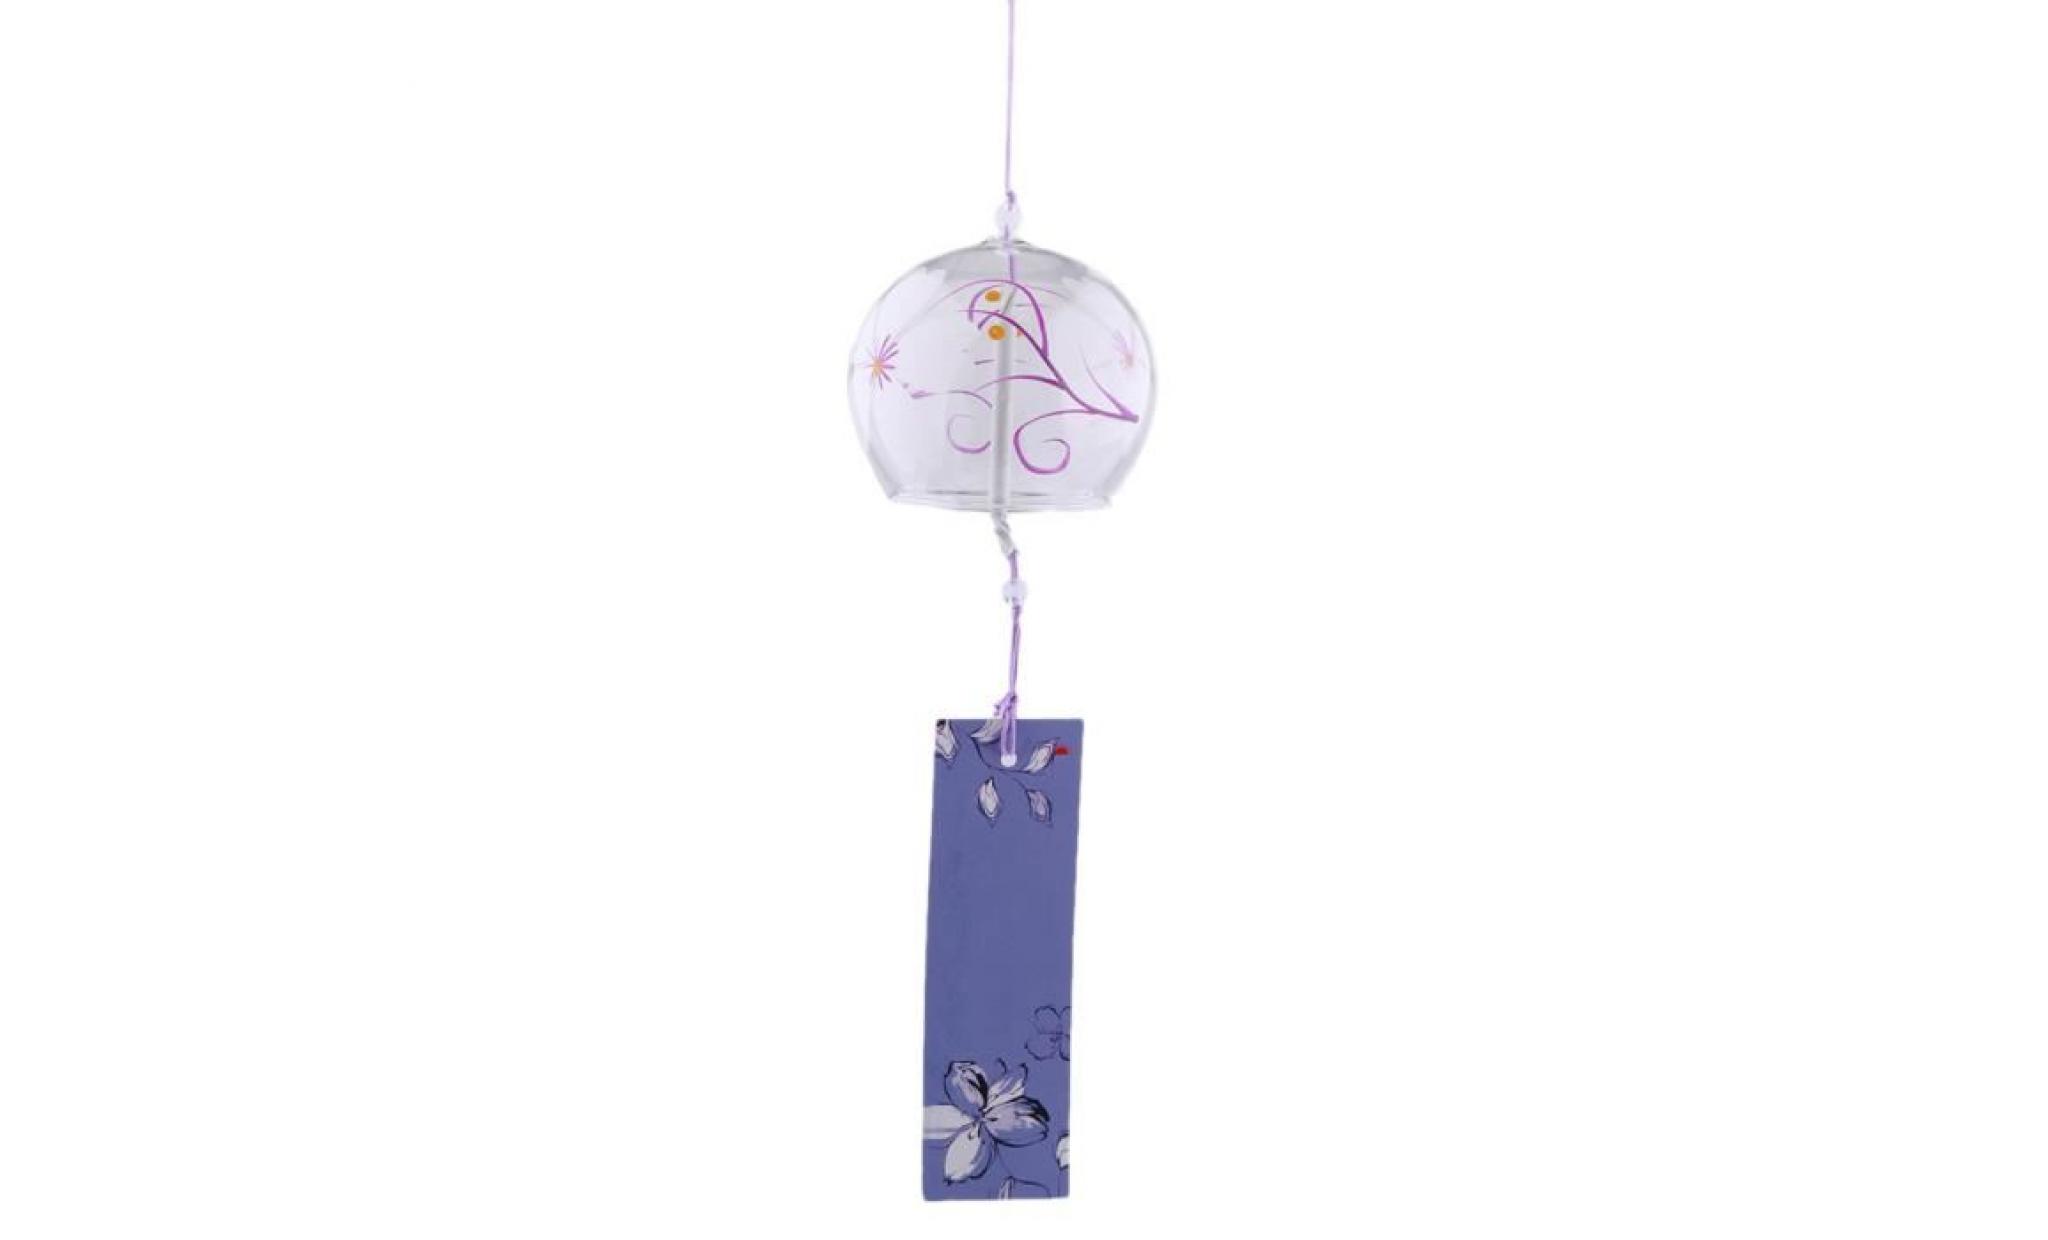 carillon a vent windchime en verre de style japonais suspendus bénédiction cloches carillons éoliens maison 2 pas cher